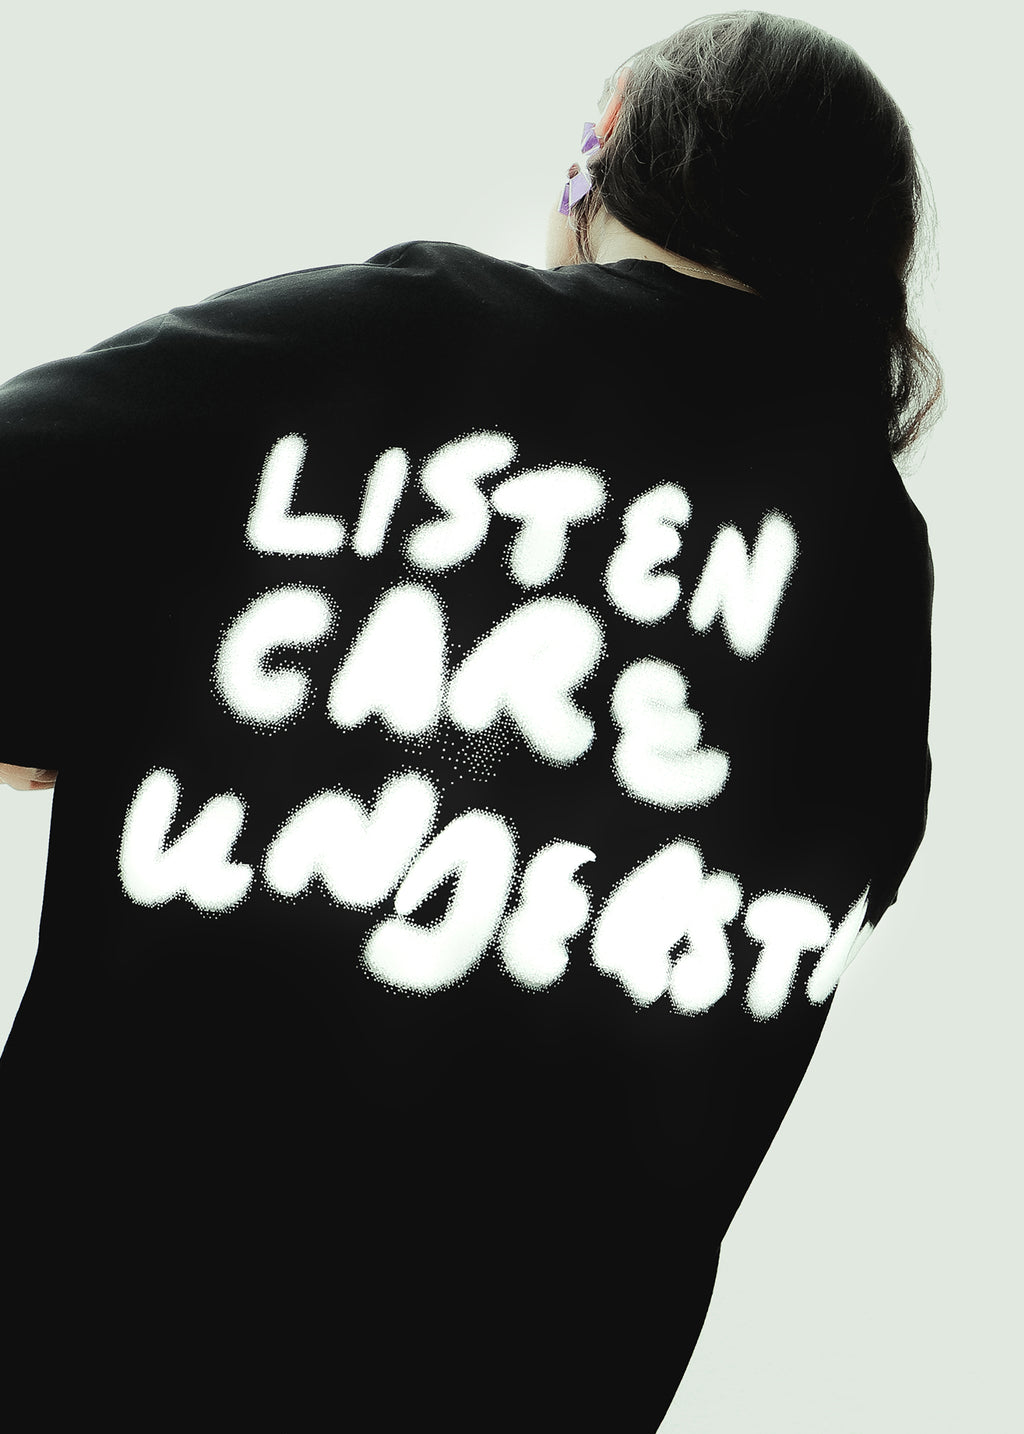 Listen Care Understand Long Sleeve